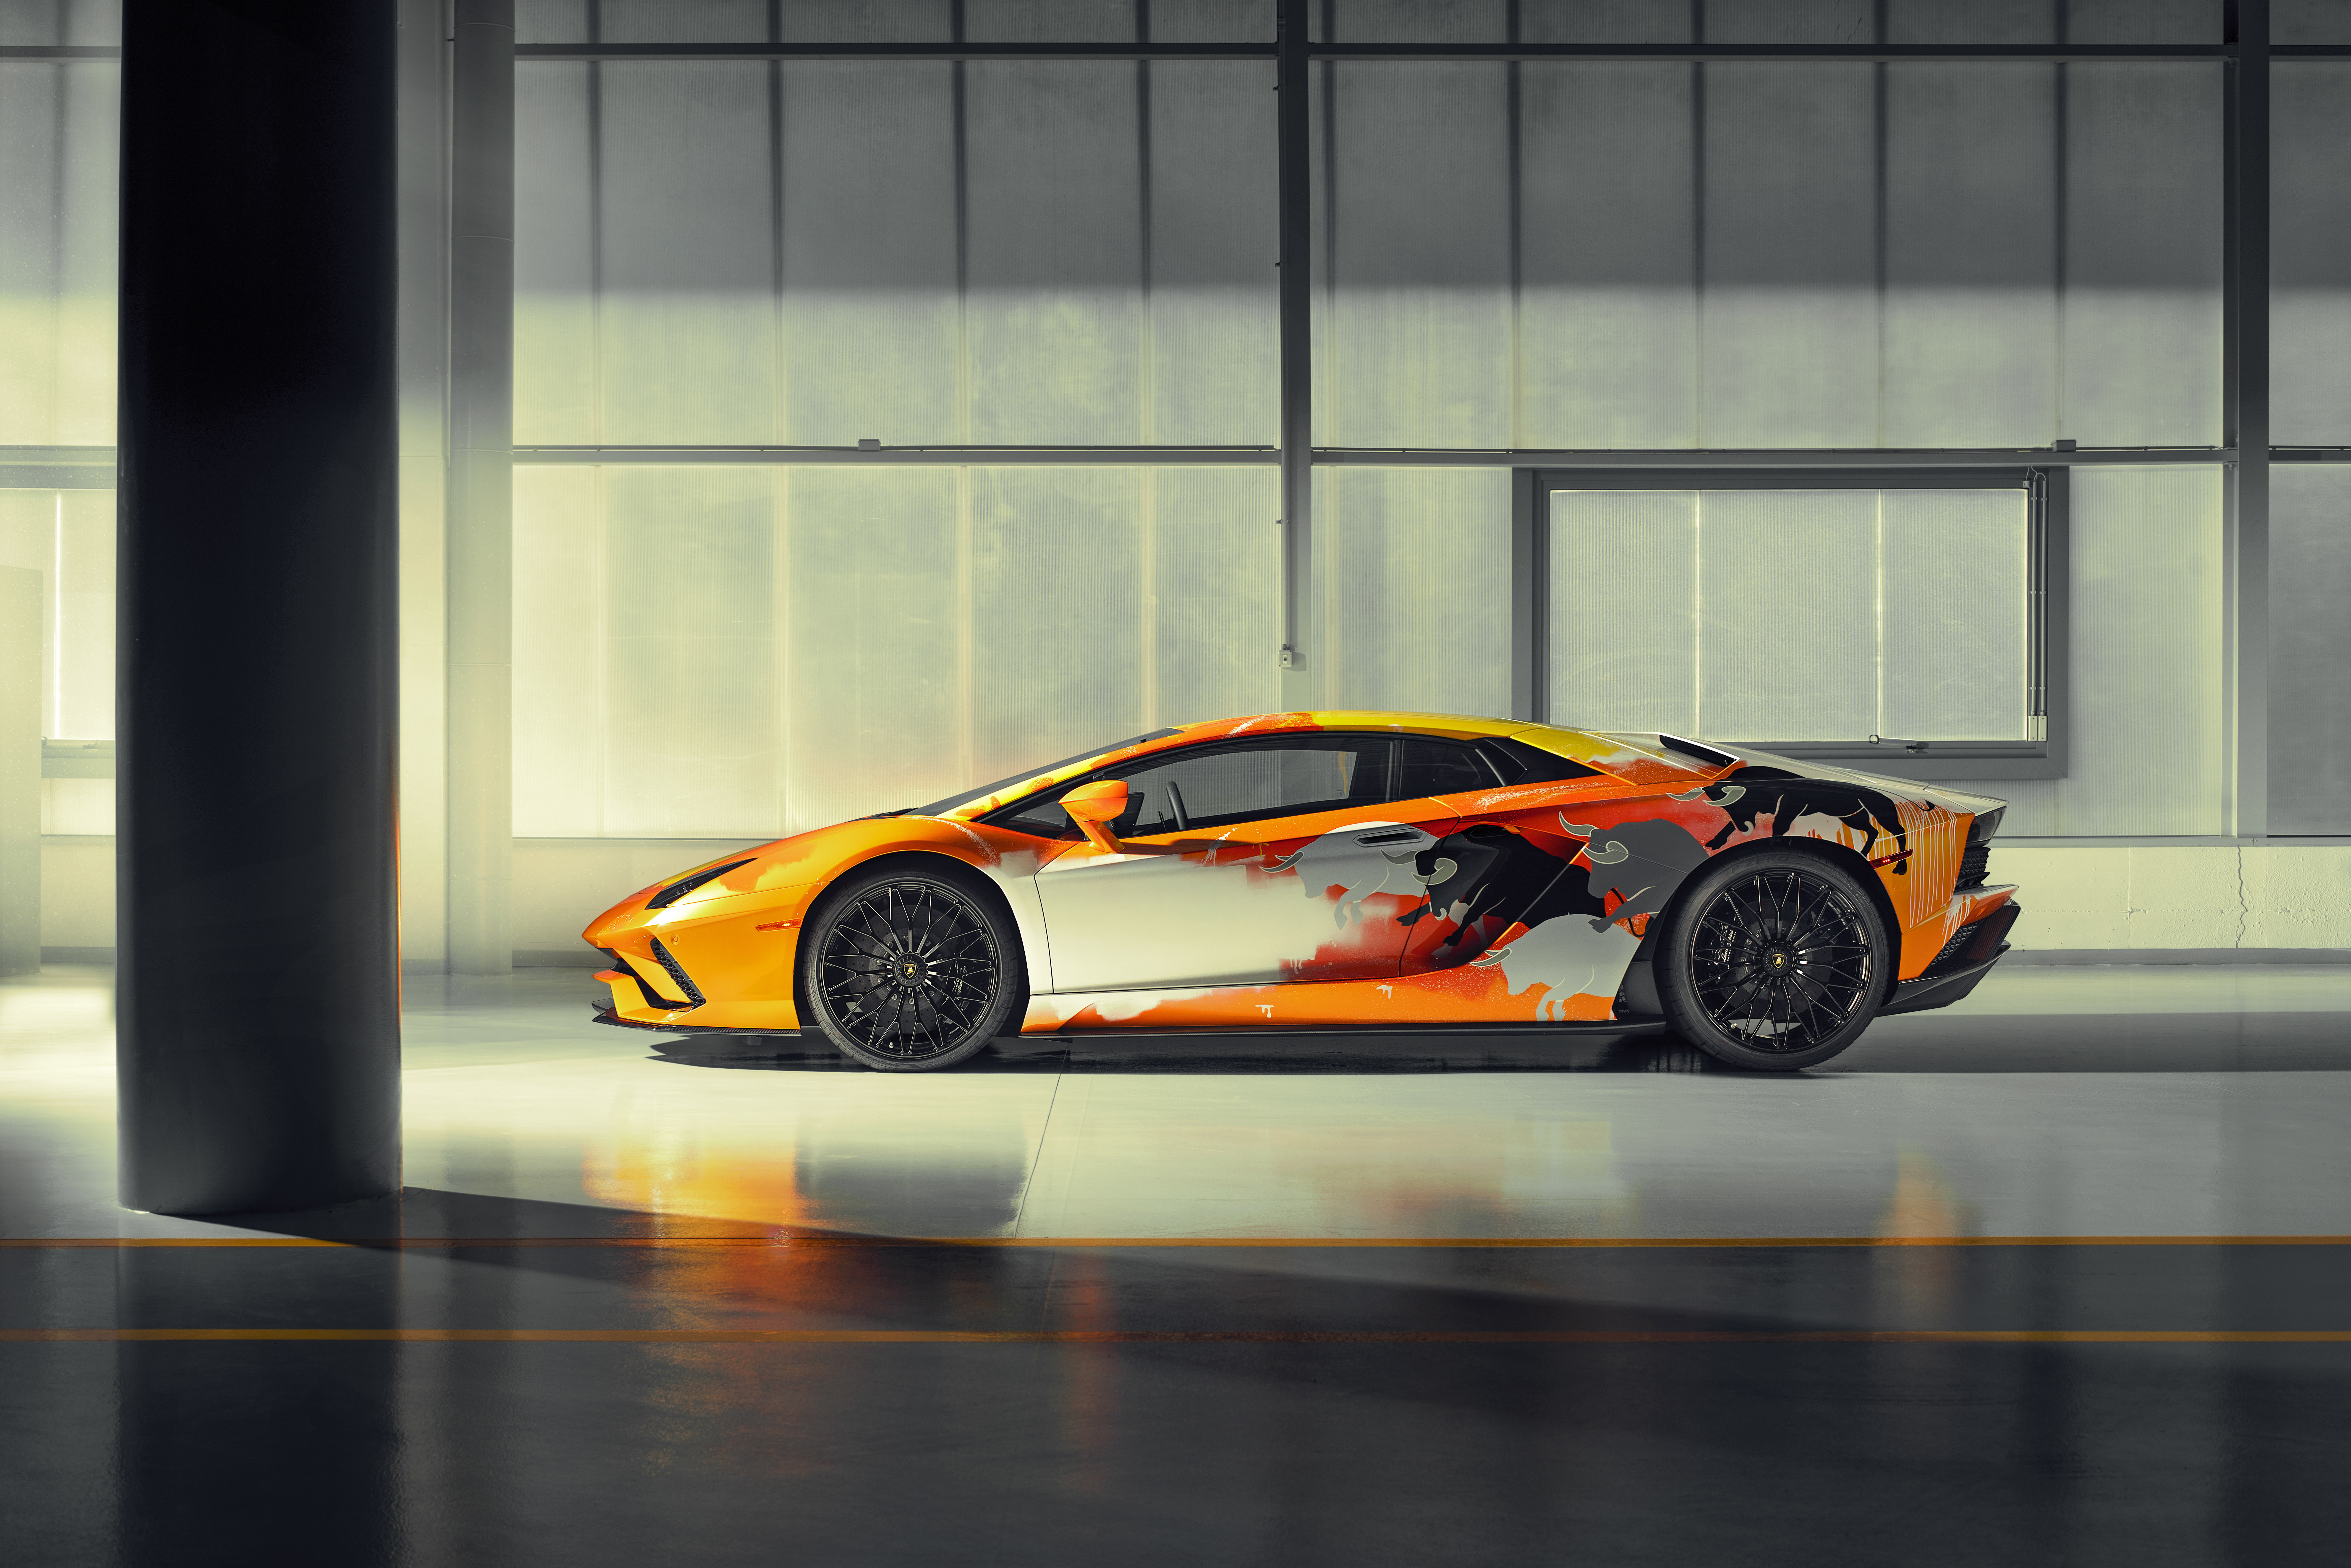 Với độ phân giải 8k Ultra HD, bức tranh chiếc xe Lamborghini sẽ thật sự sống động và đẹp mắt trong mắt người xem. Hãy cùng chiêm ngưỡng những đường nét tinh tế và màu sắc rực rỡ của chiếc xe đỉnh cao này.